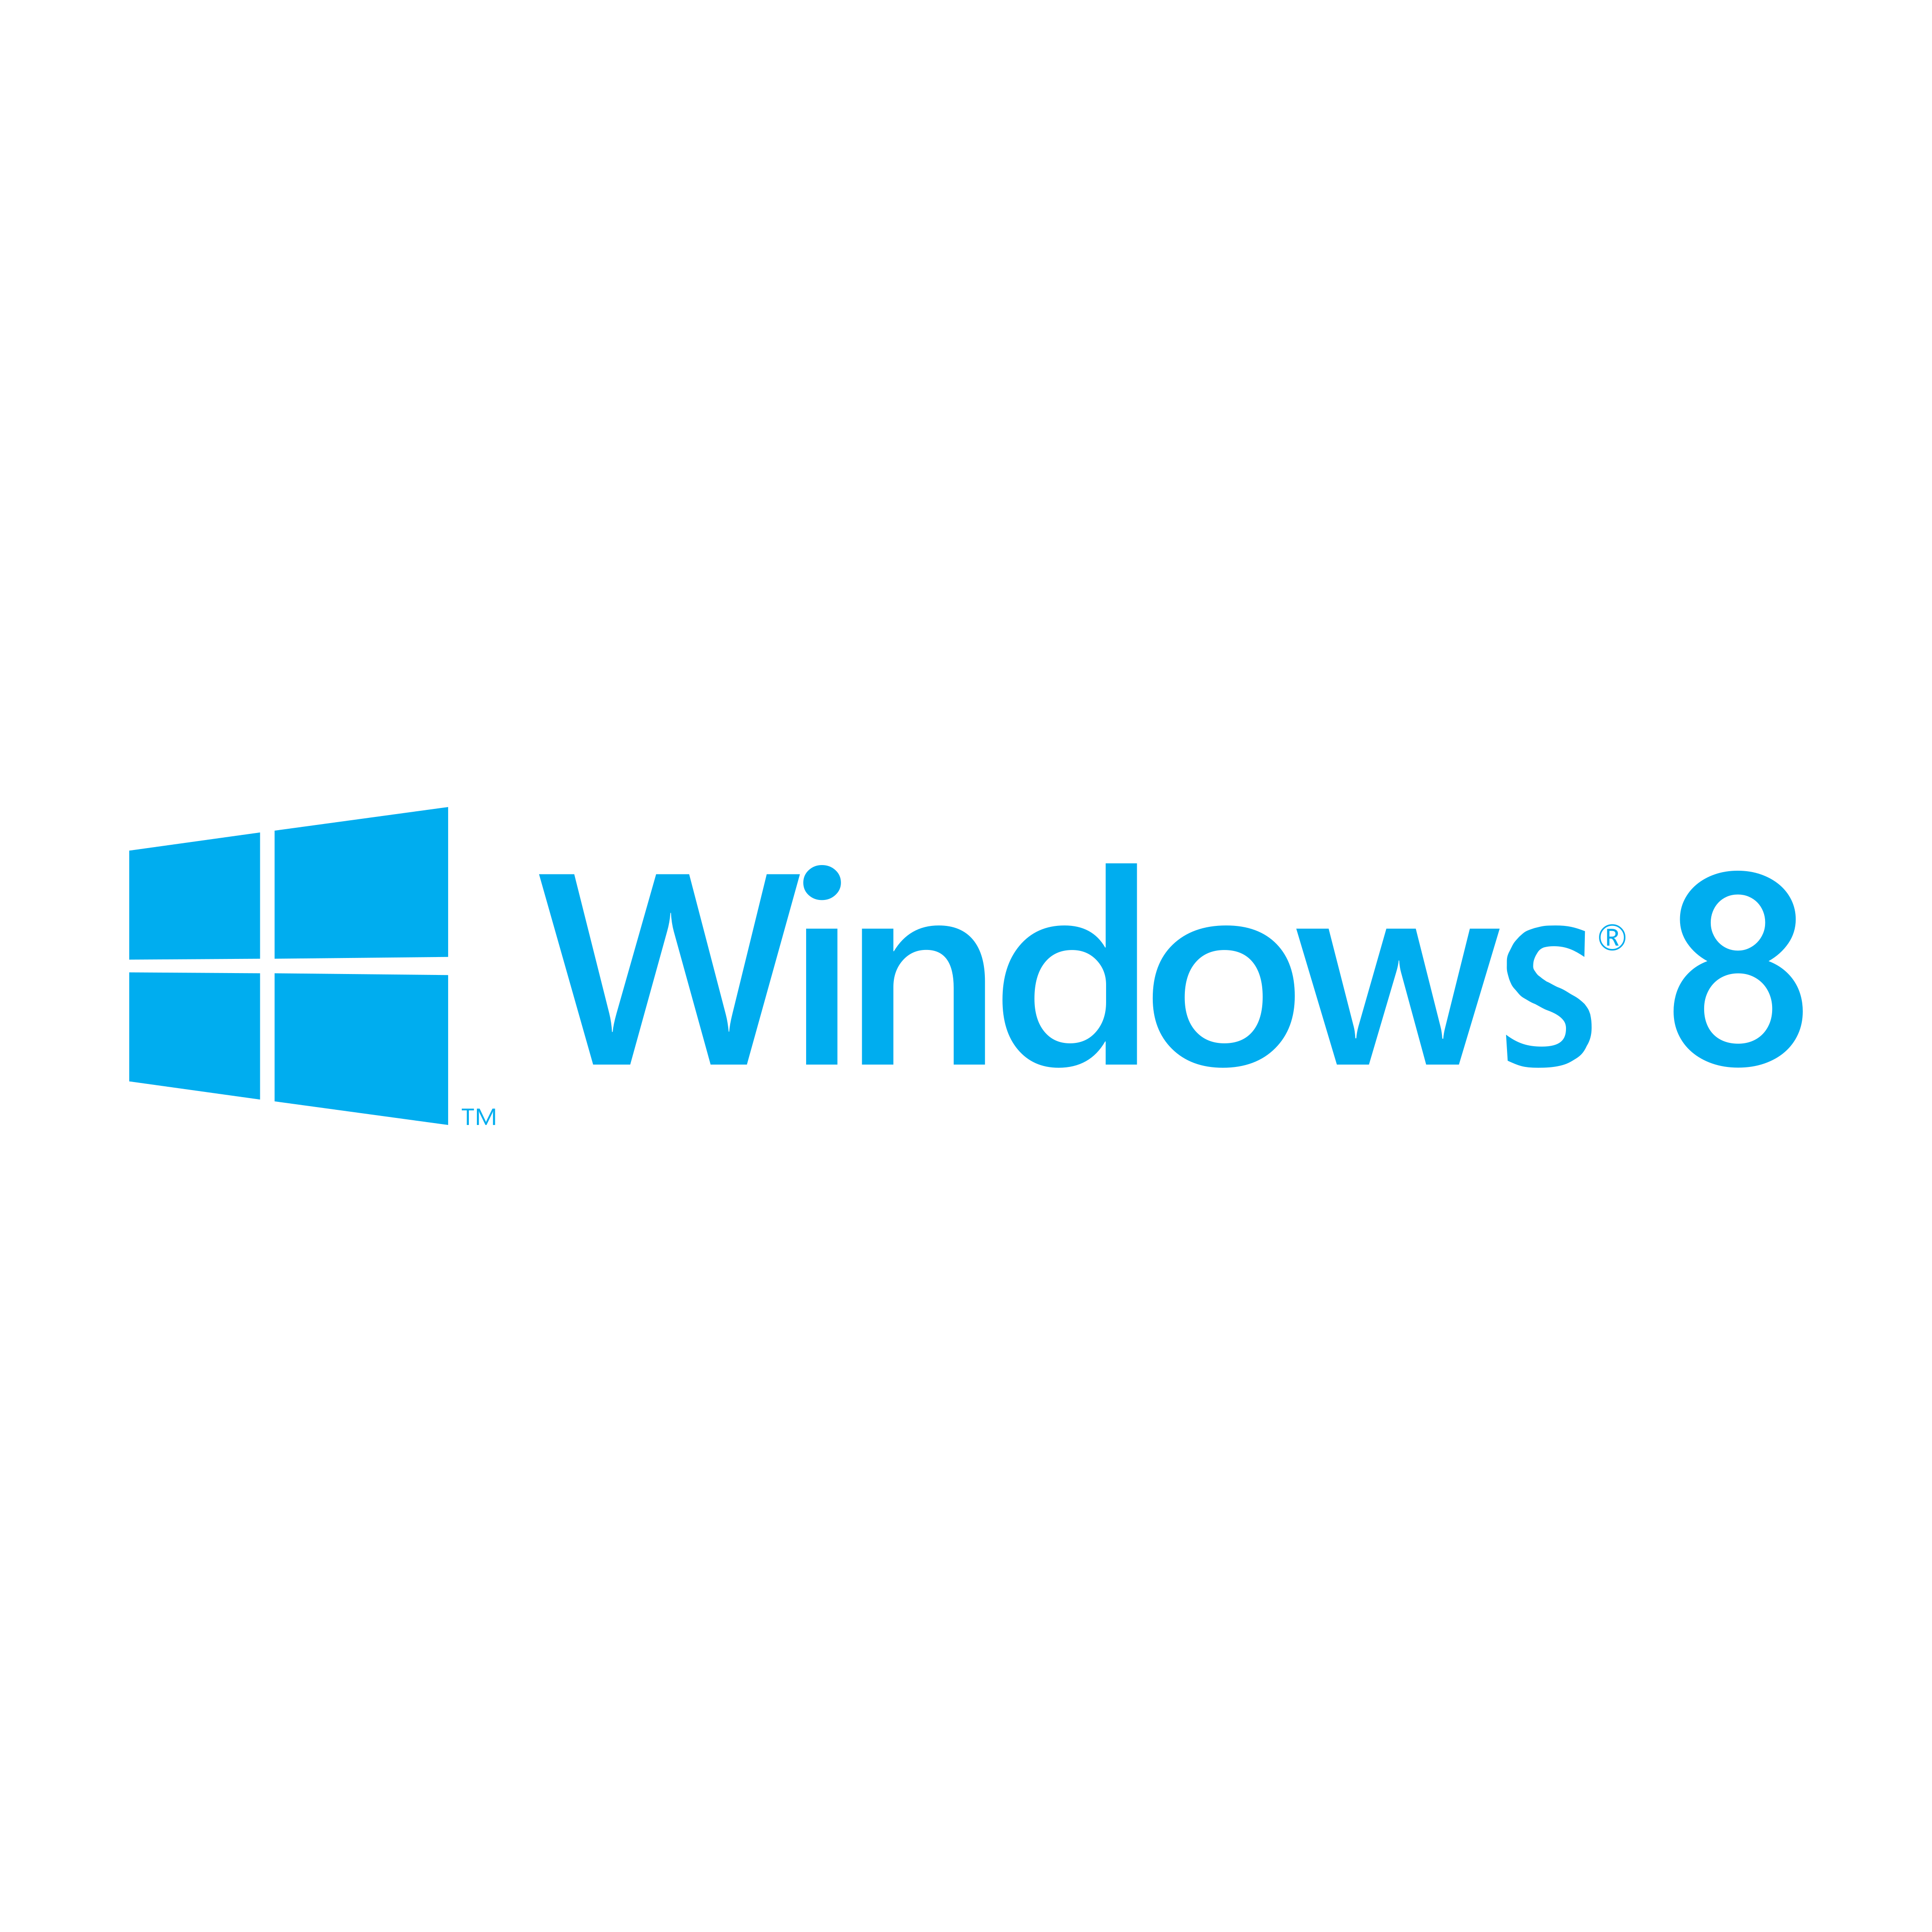 Windows 8 Logo PNG.